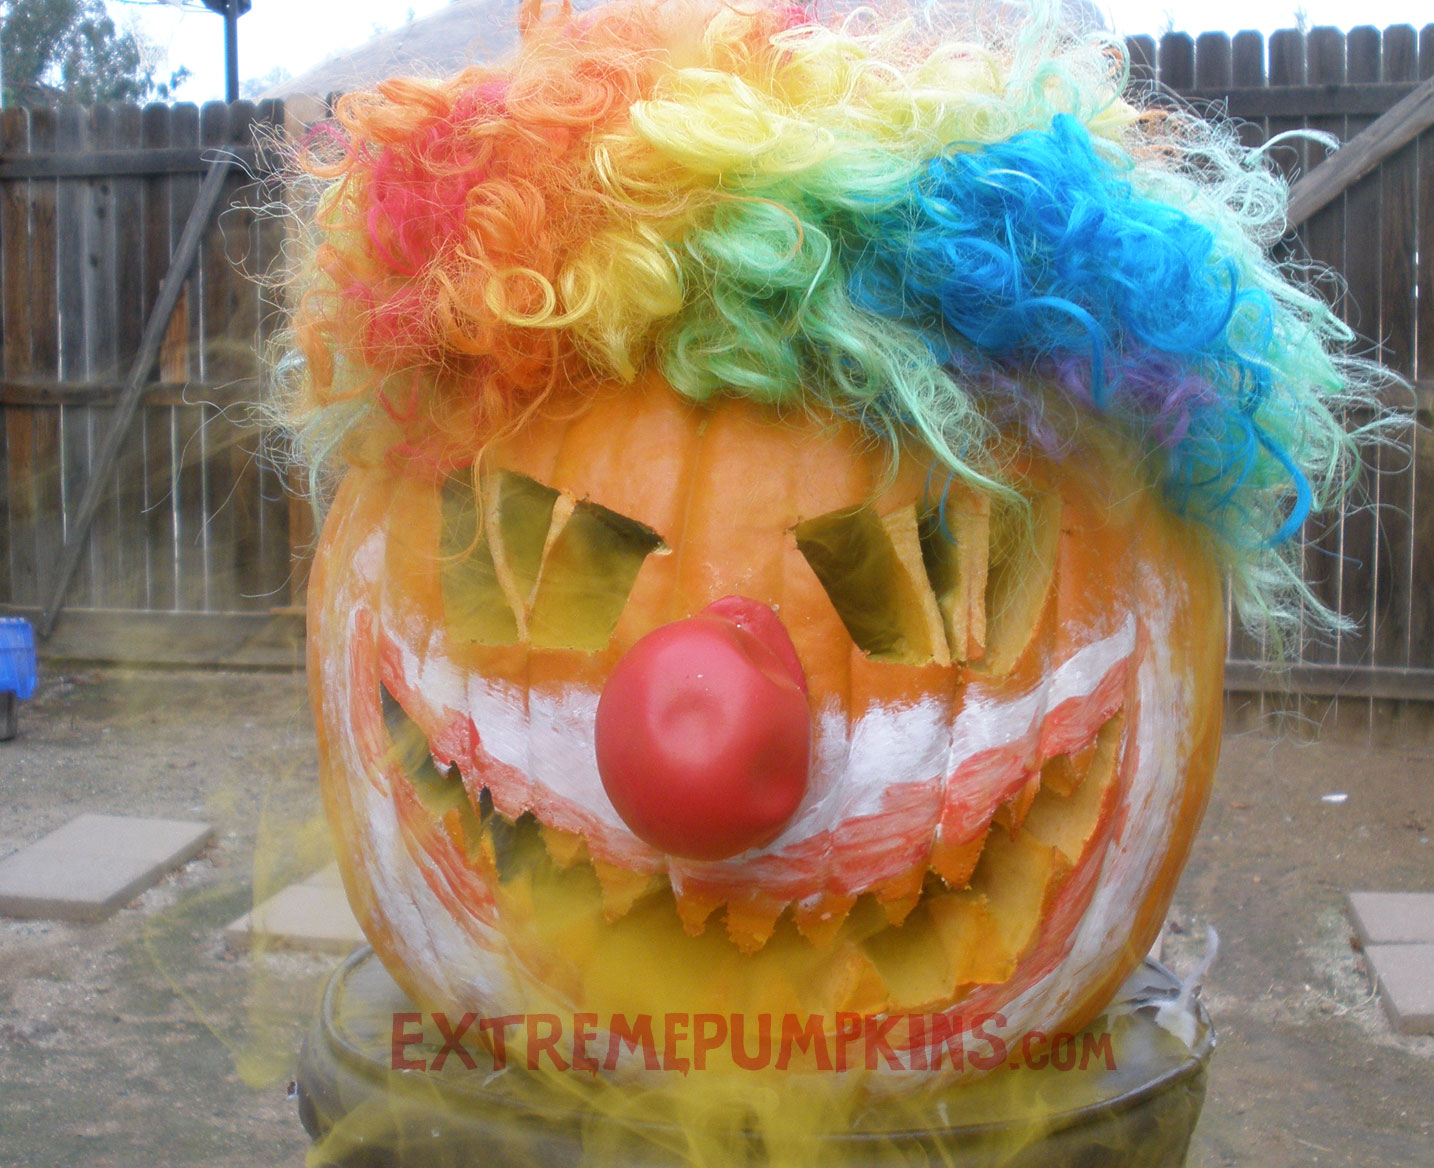 The Crazy Clown Pumpkin